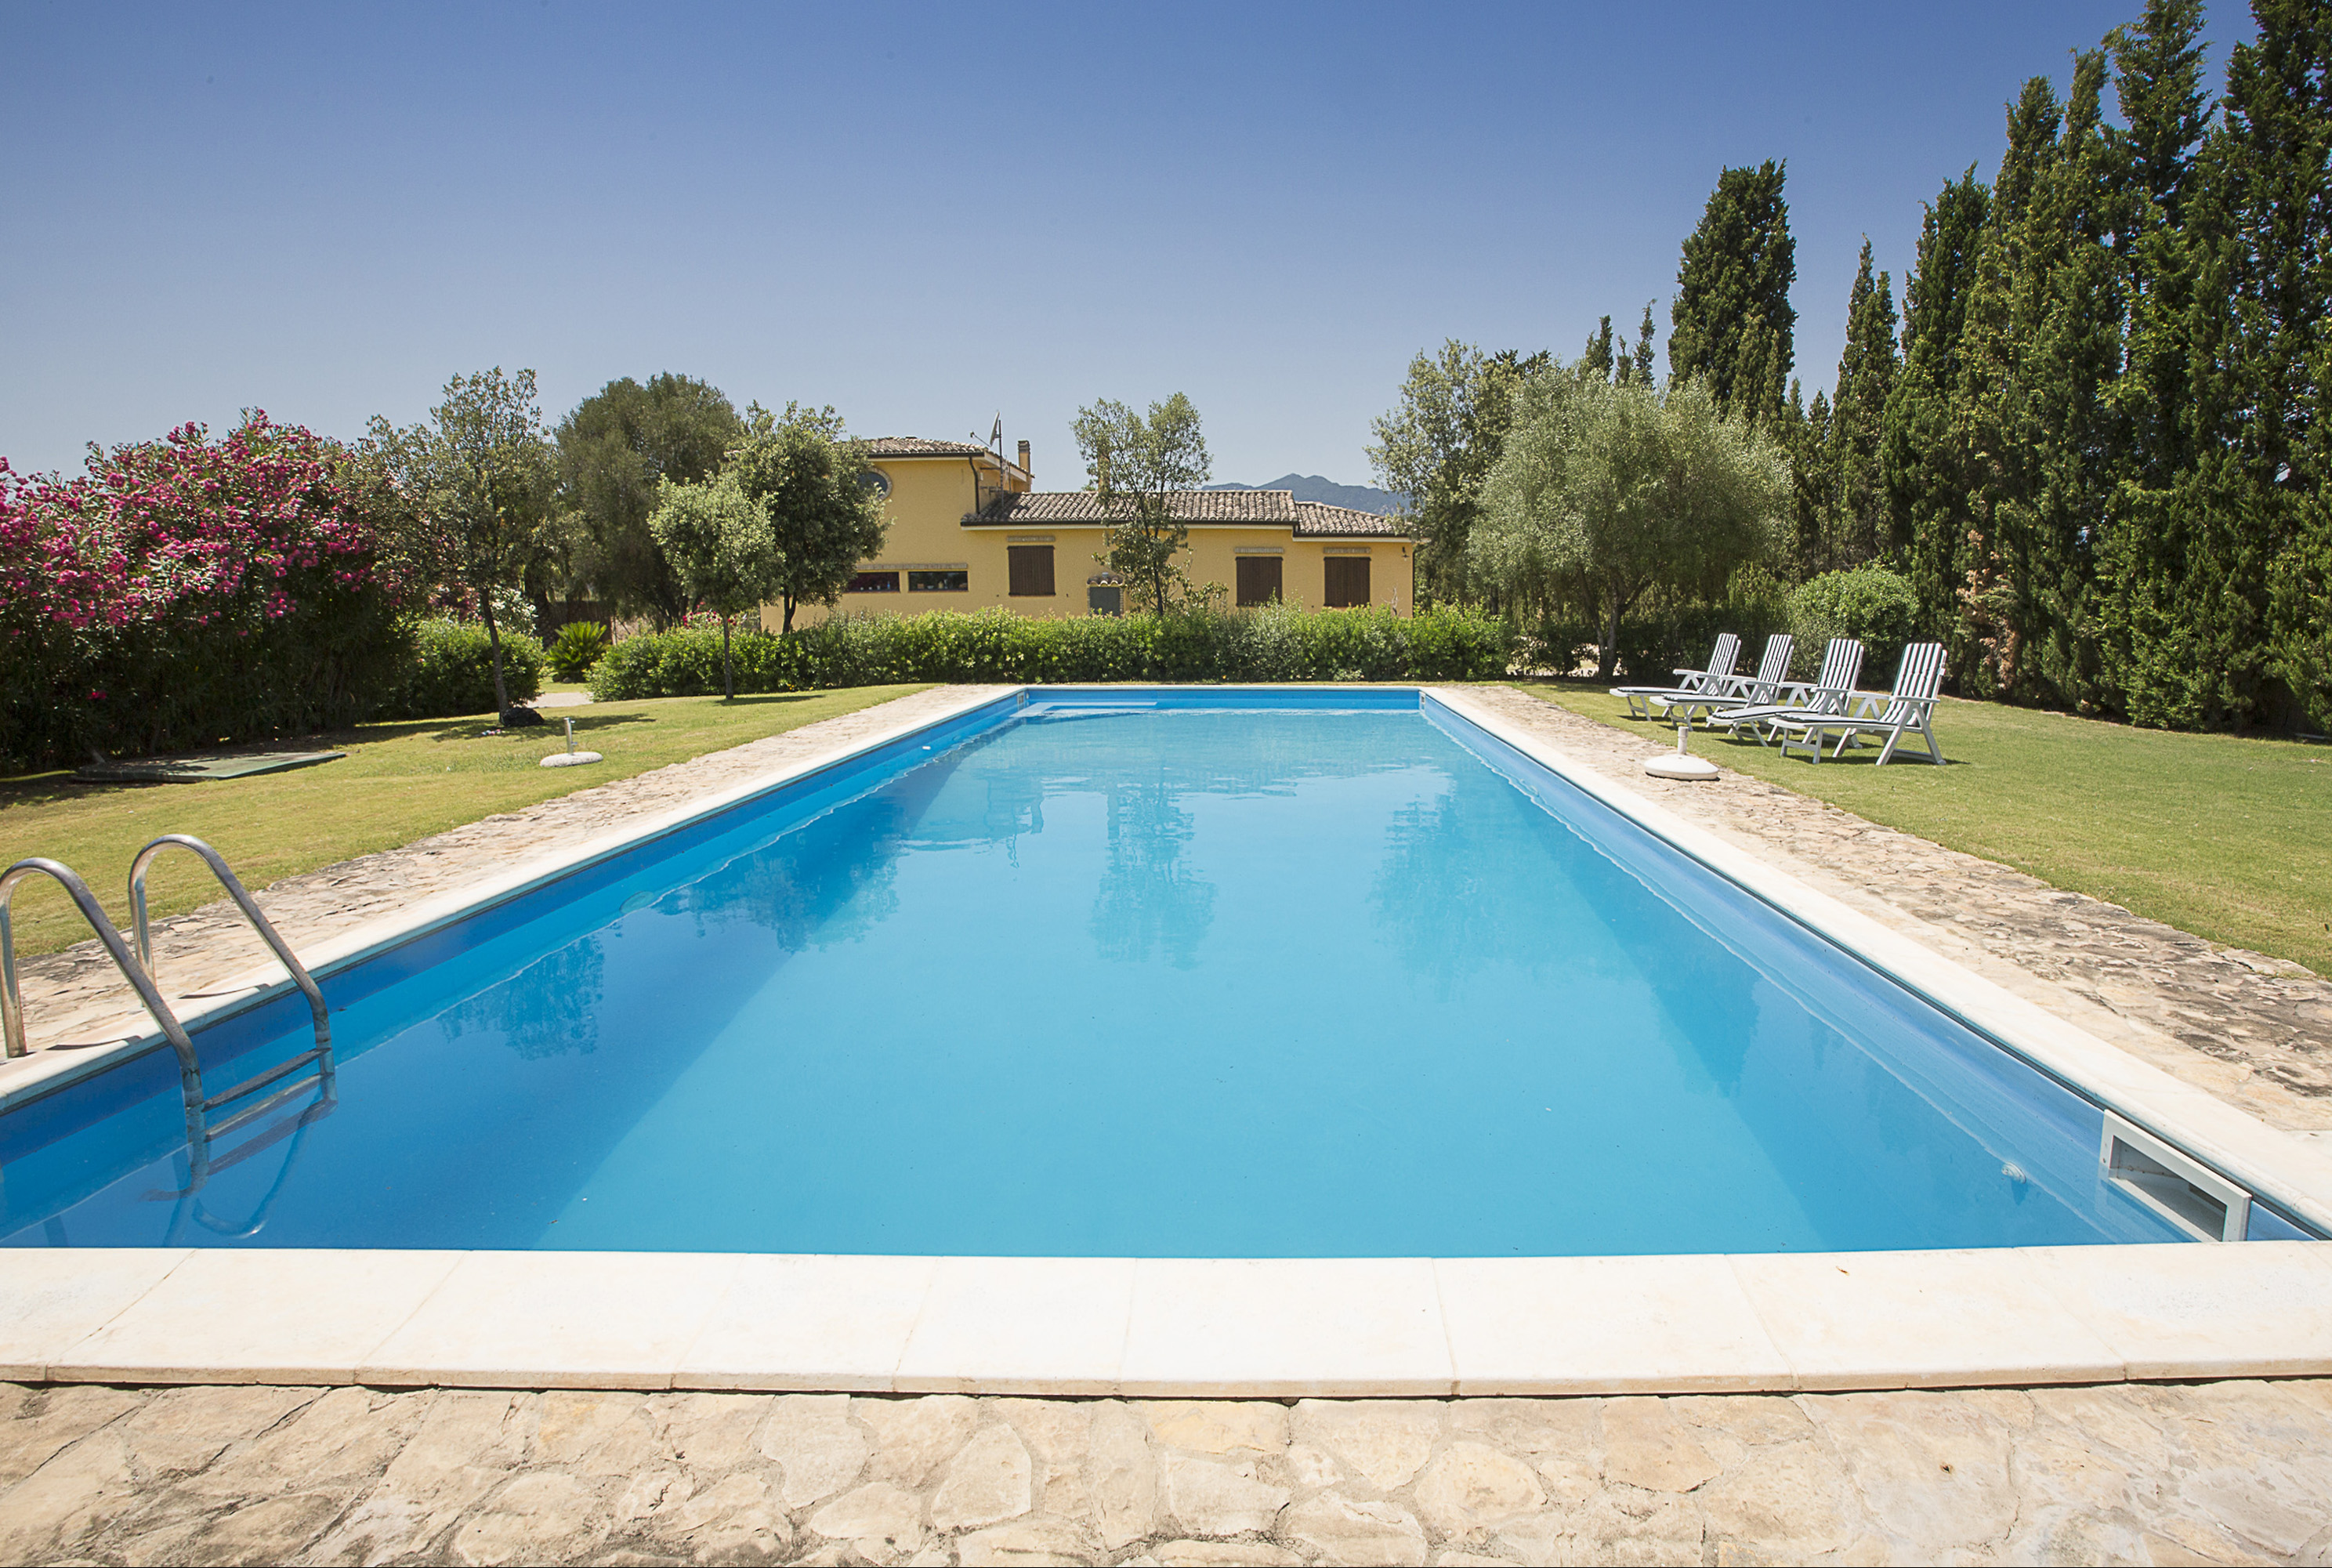 A vendre villa in zone tranquille Villa San Pietro Sardegna